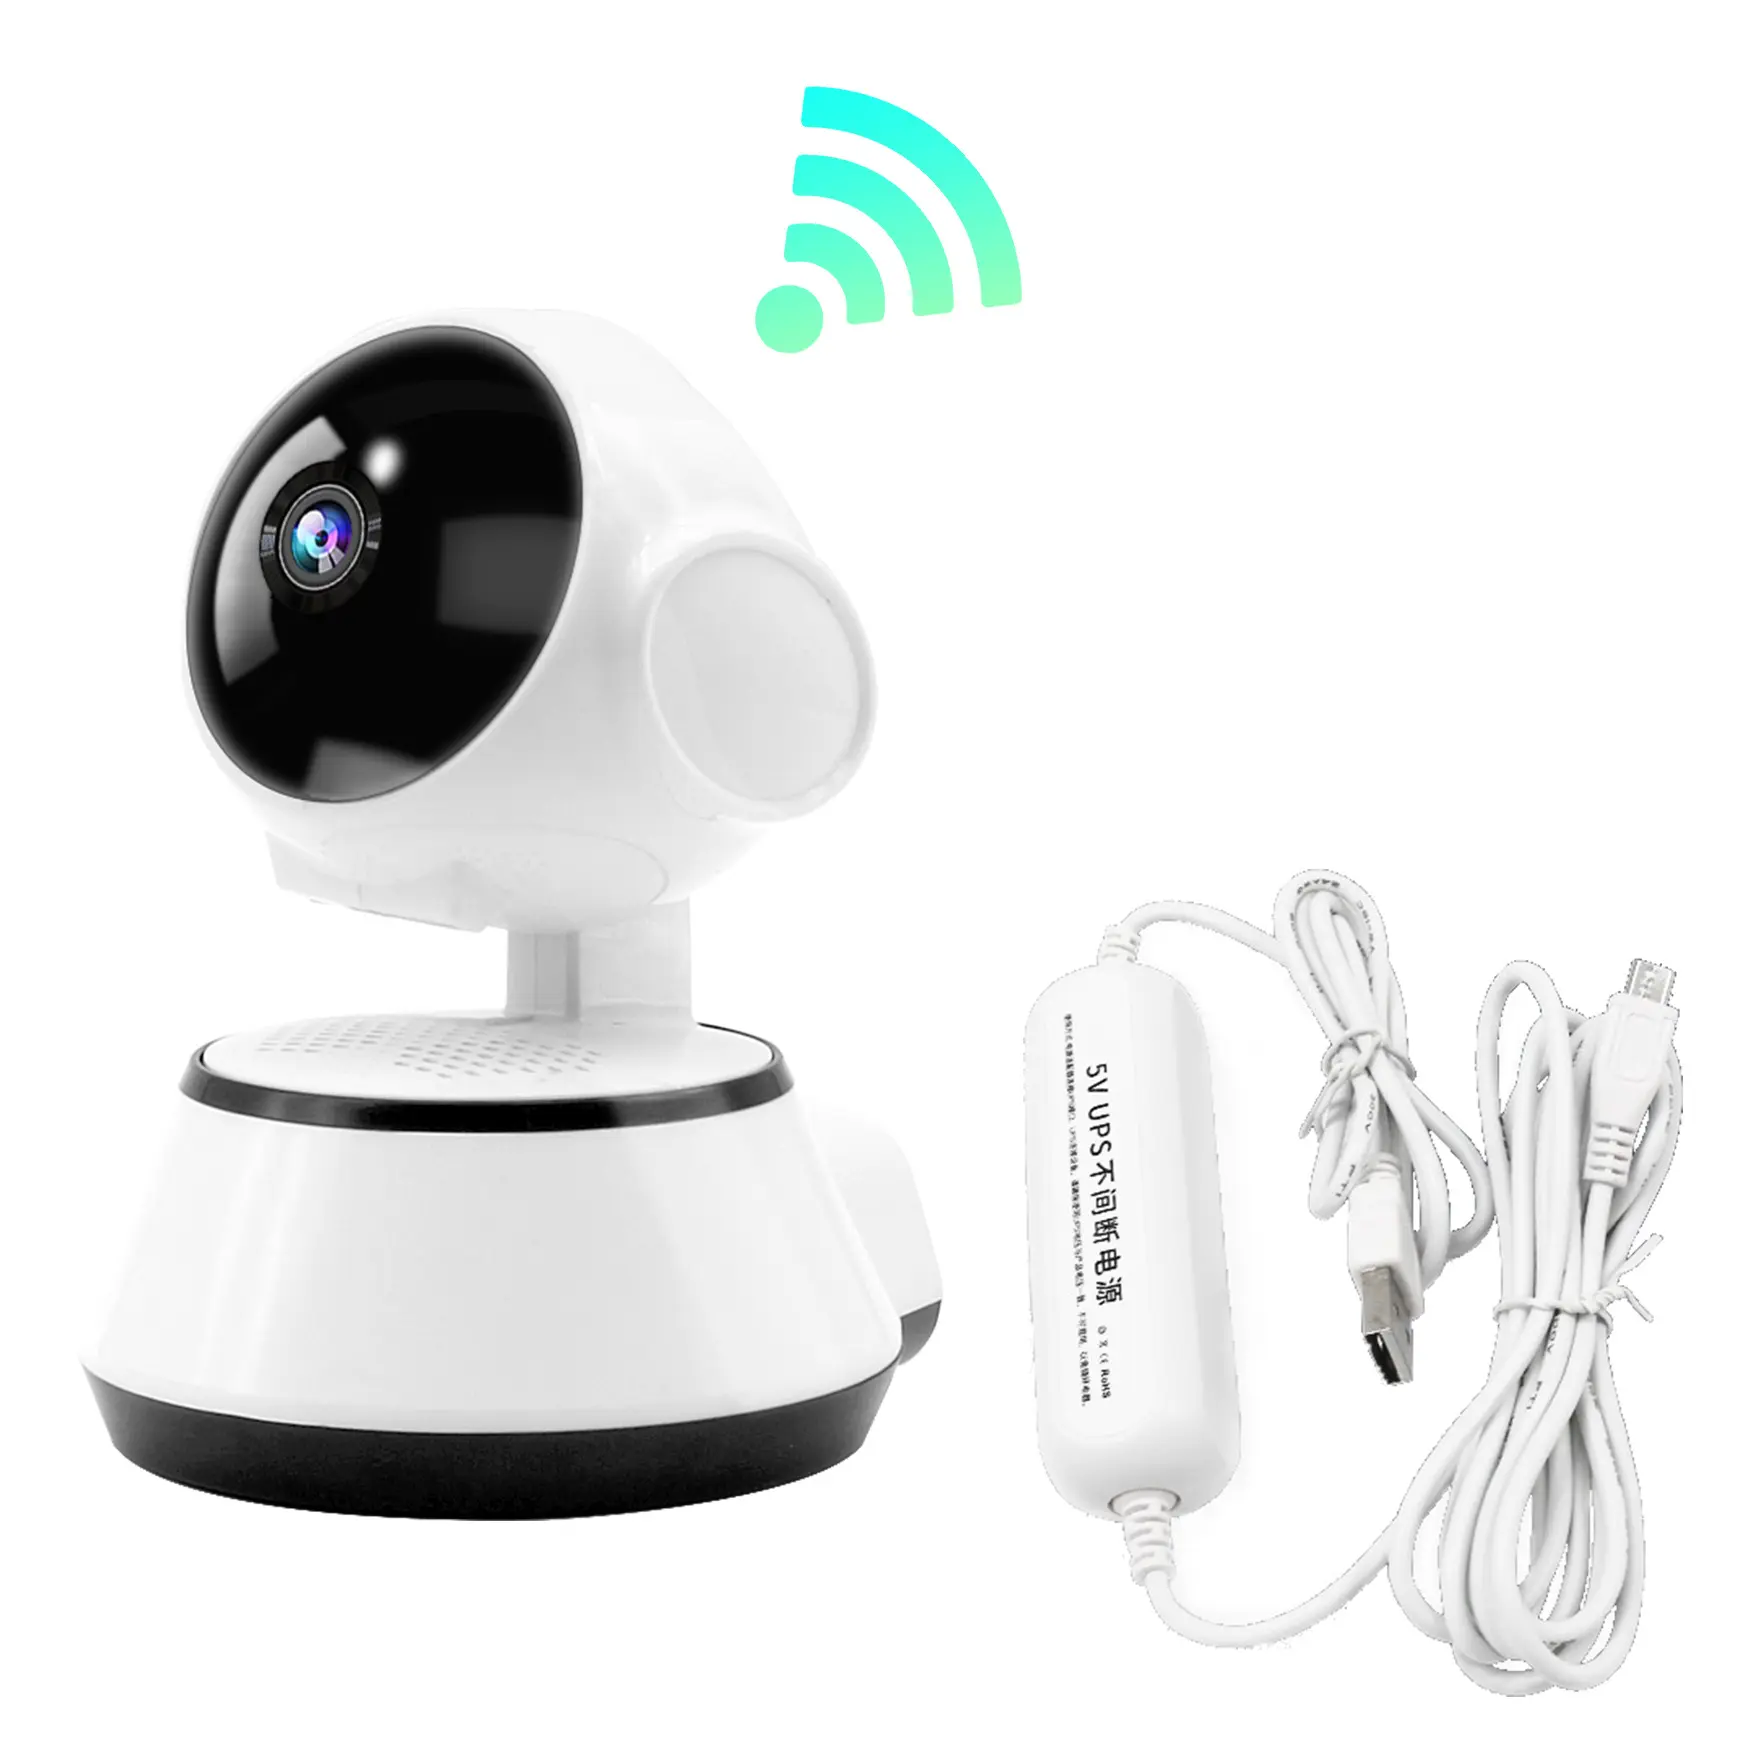 Cámaras domésticas y de vigilancia V380 HD 720P 360 grados giratorio AP Hotspot conexión IP cámara inalámbrica